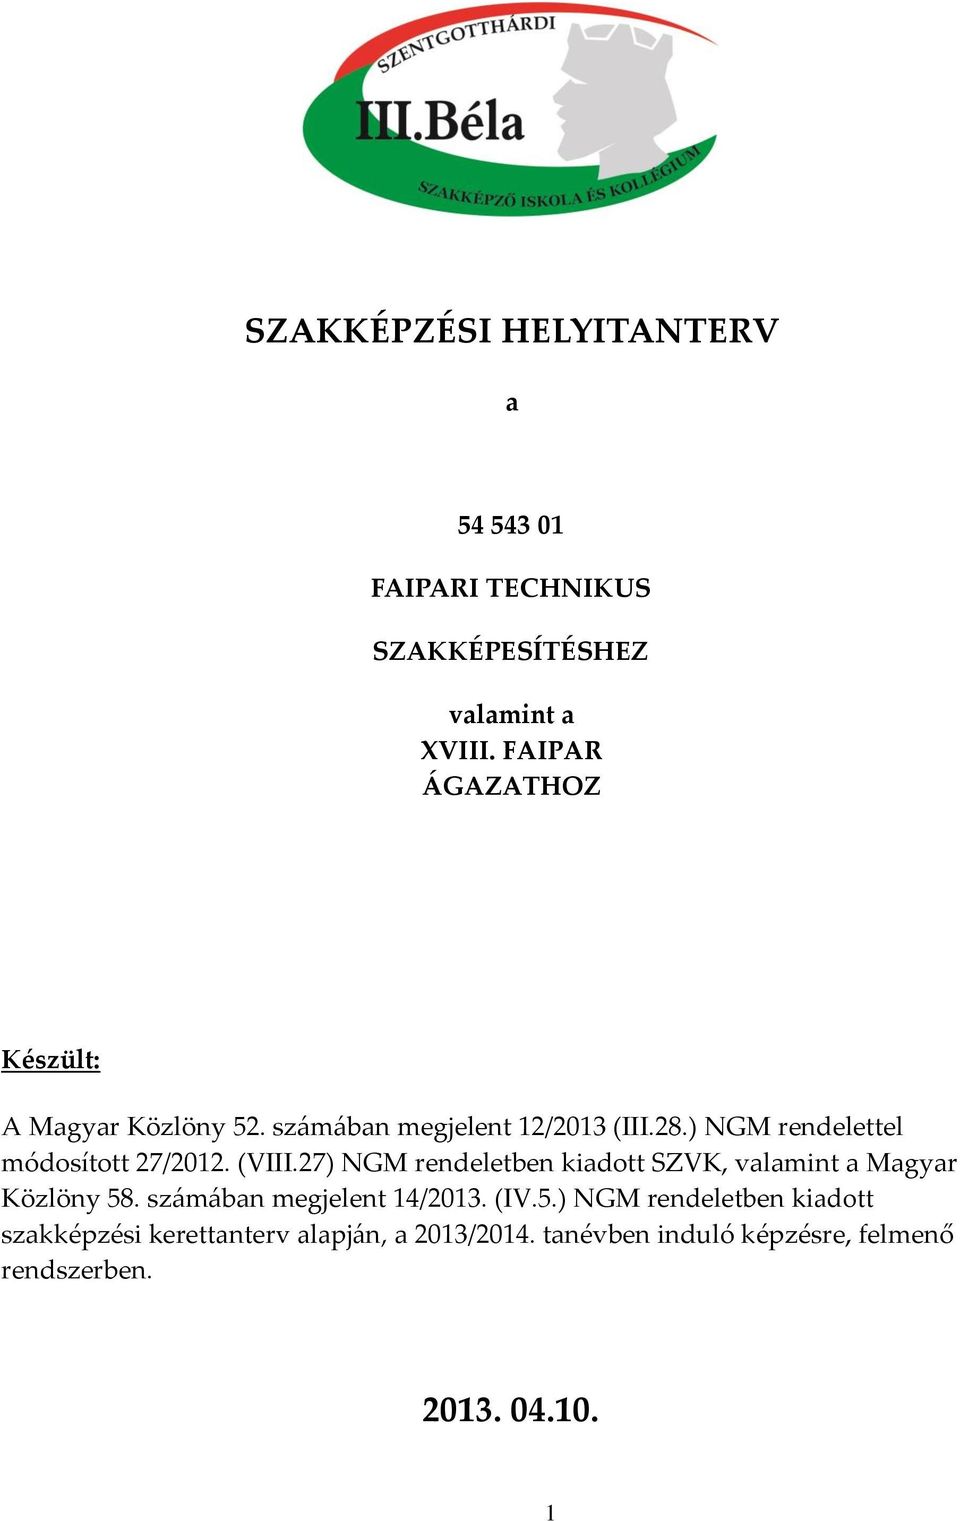 ) NGM rendelettel módosított 27/2012. (VIII.27) NGM rendeletben kiadott SZVK, valamint a Magyar Közlöny 58.